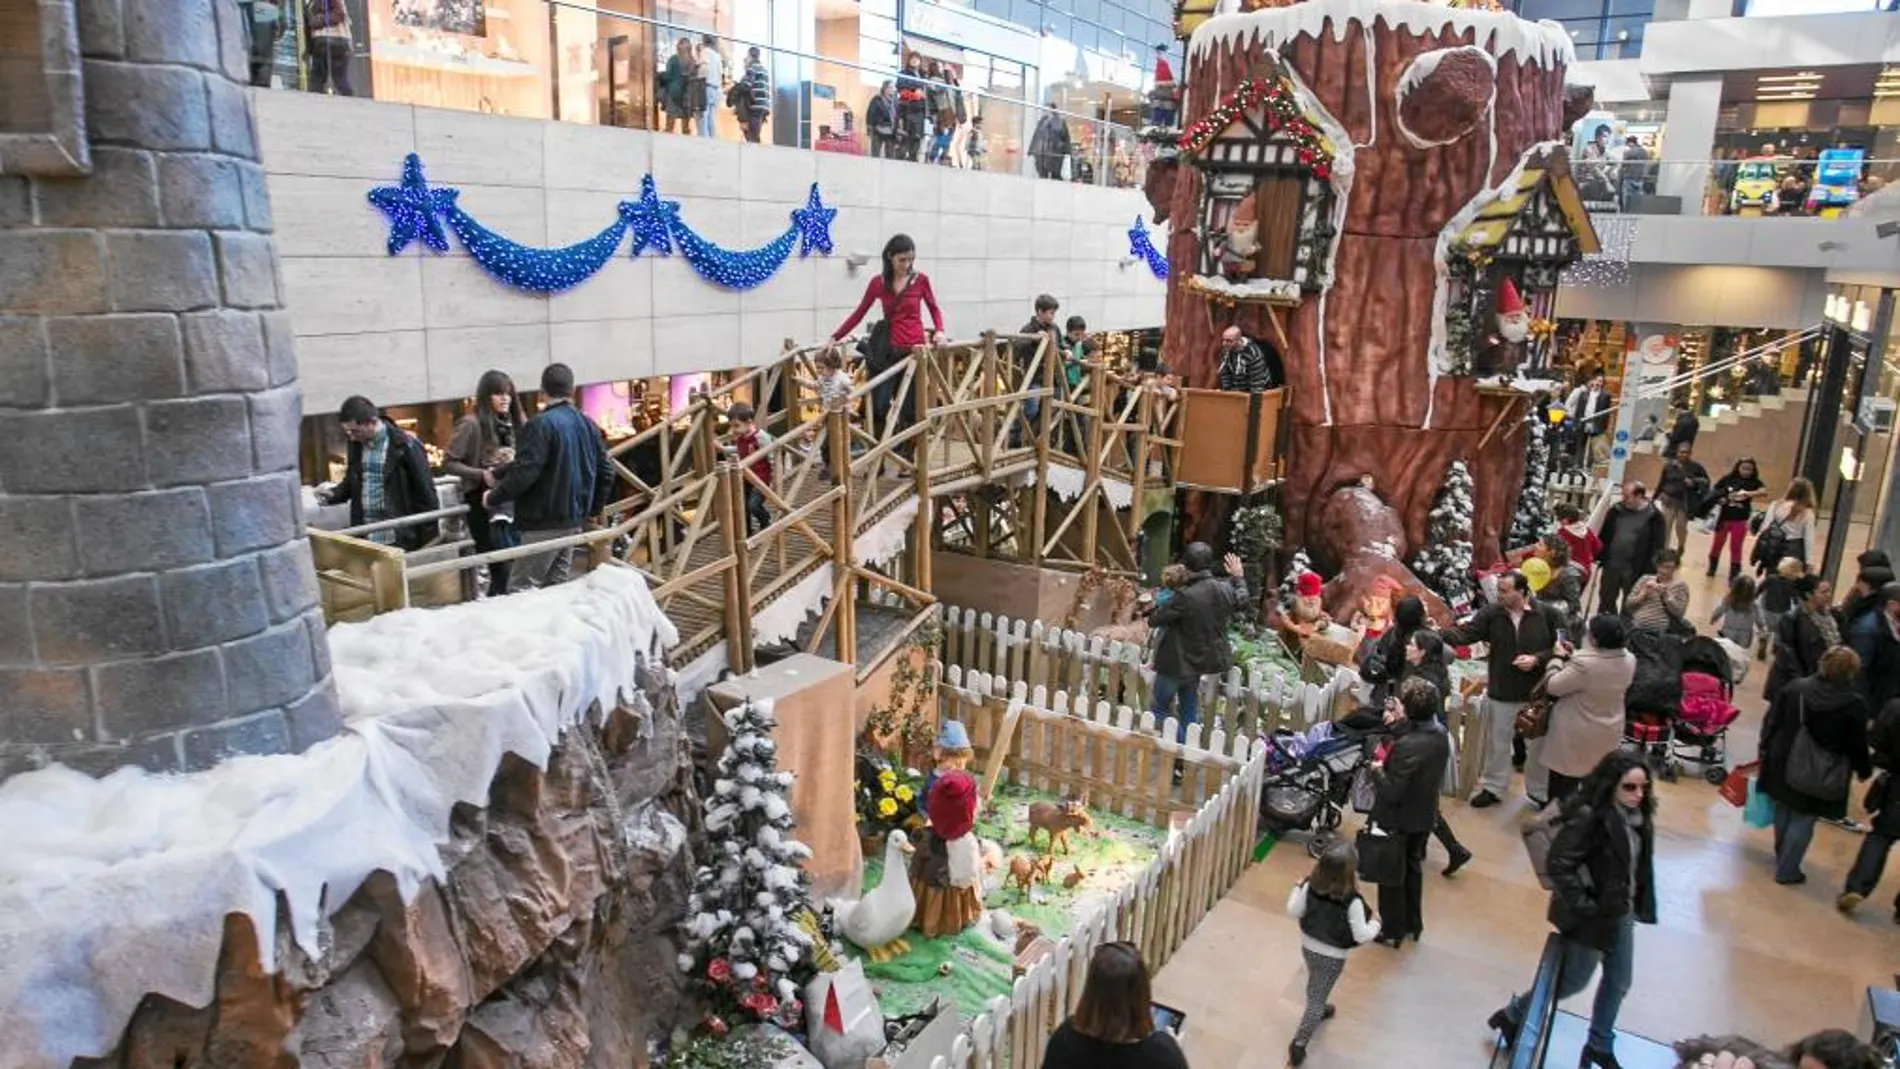 El centro comercial L'Illa presentaba ayer una excelente afluencia de gente, dispuesta a rematar las compras navideñas